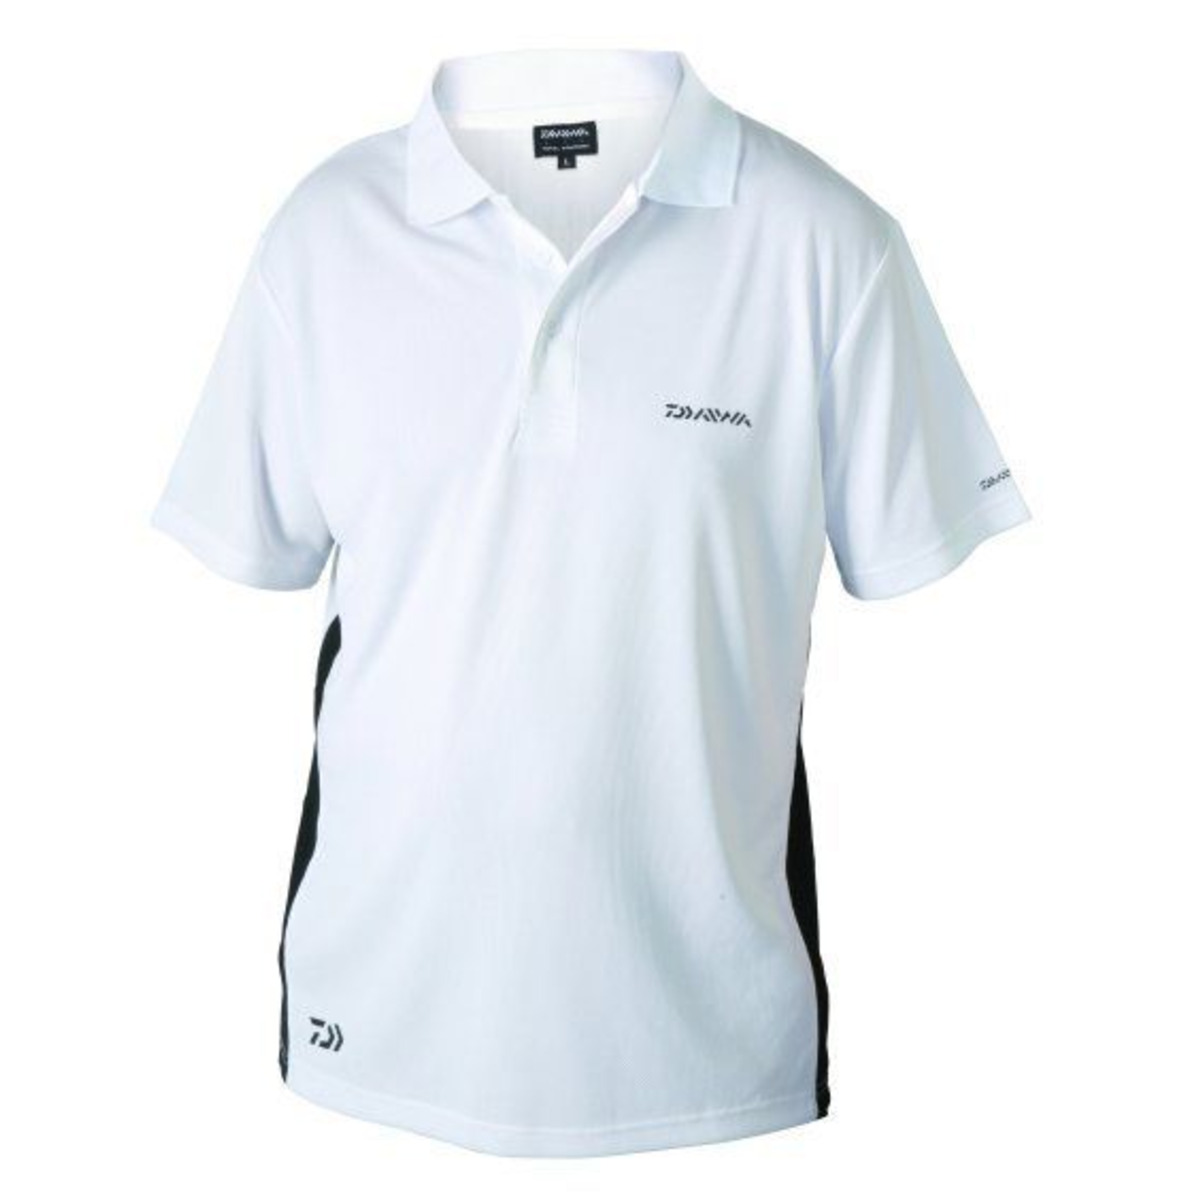 Daiwa Polo Shirt - M -  Blanco         